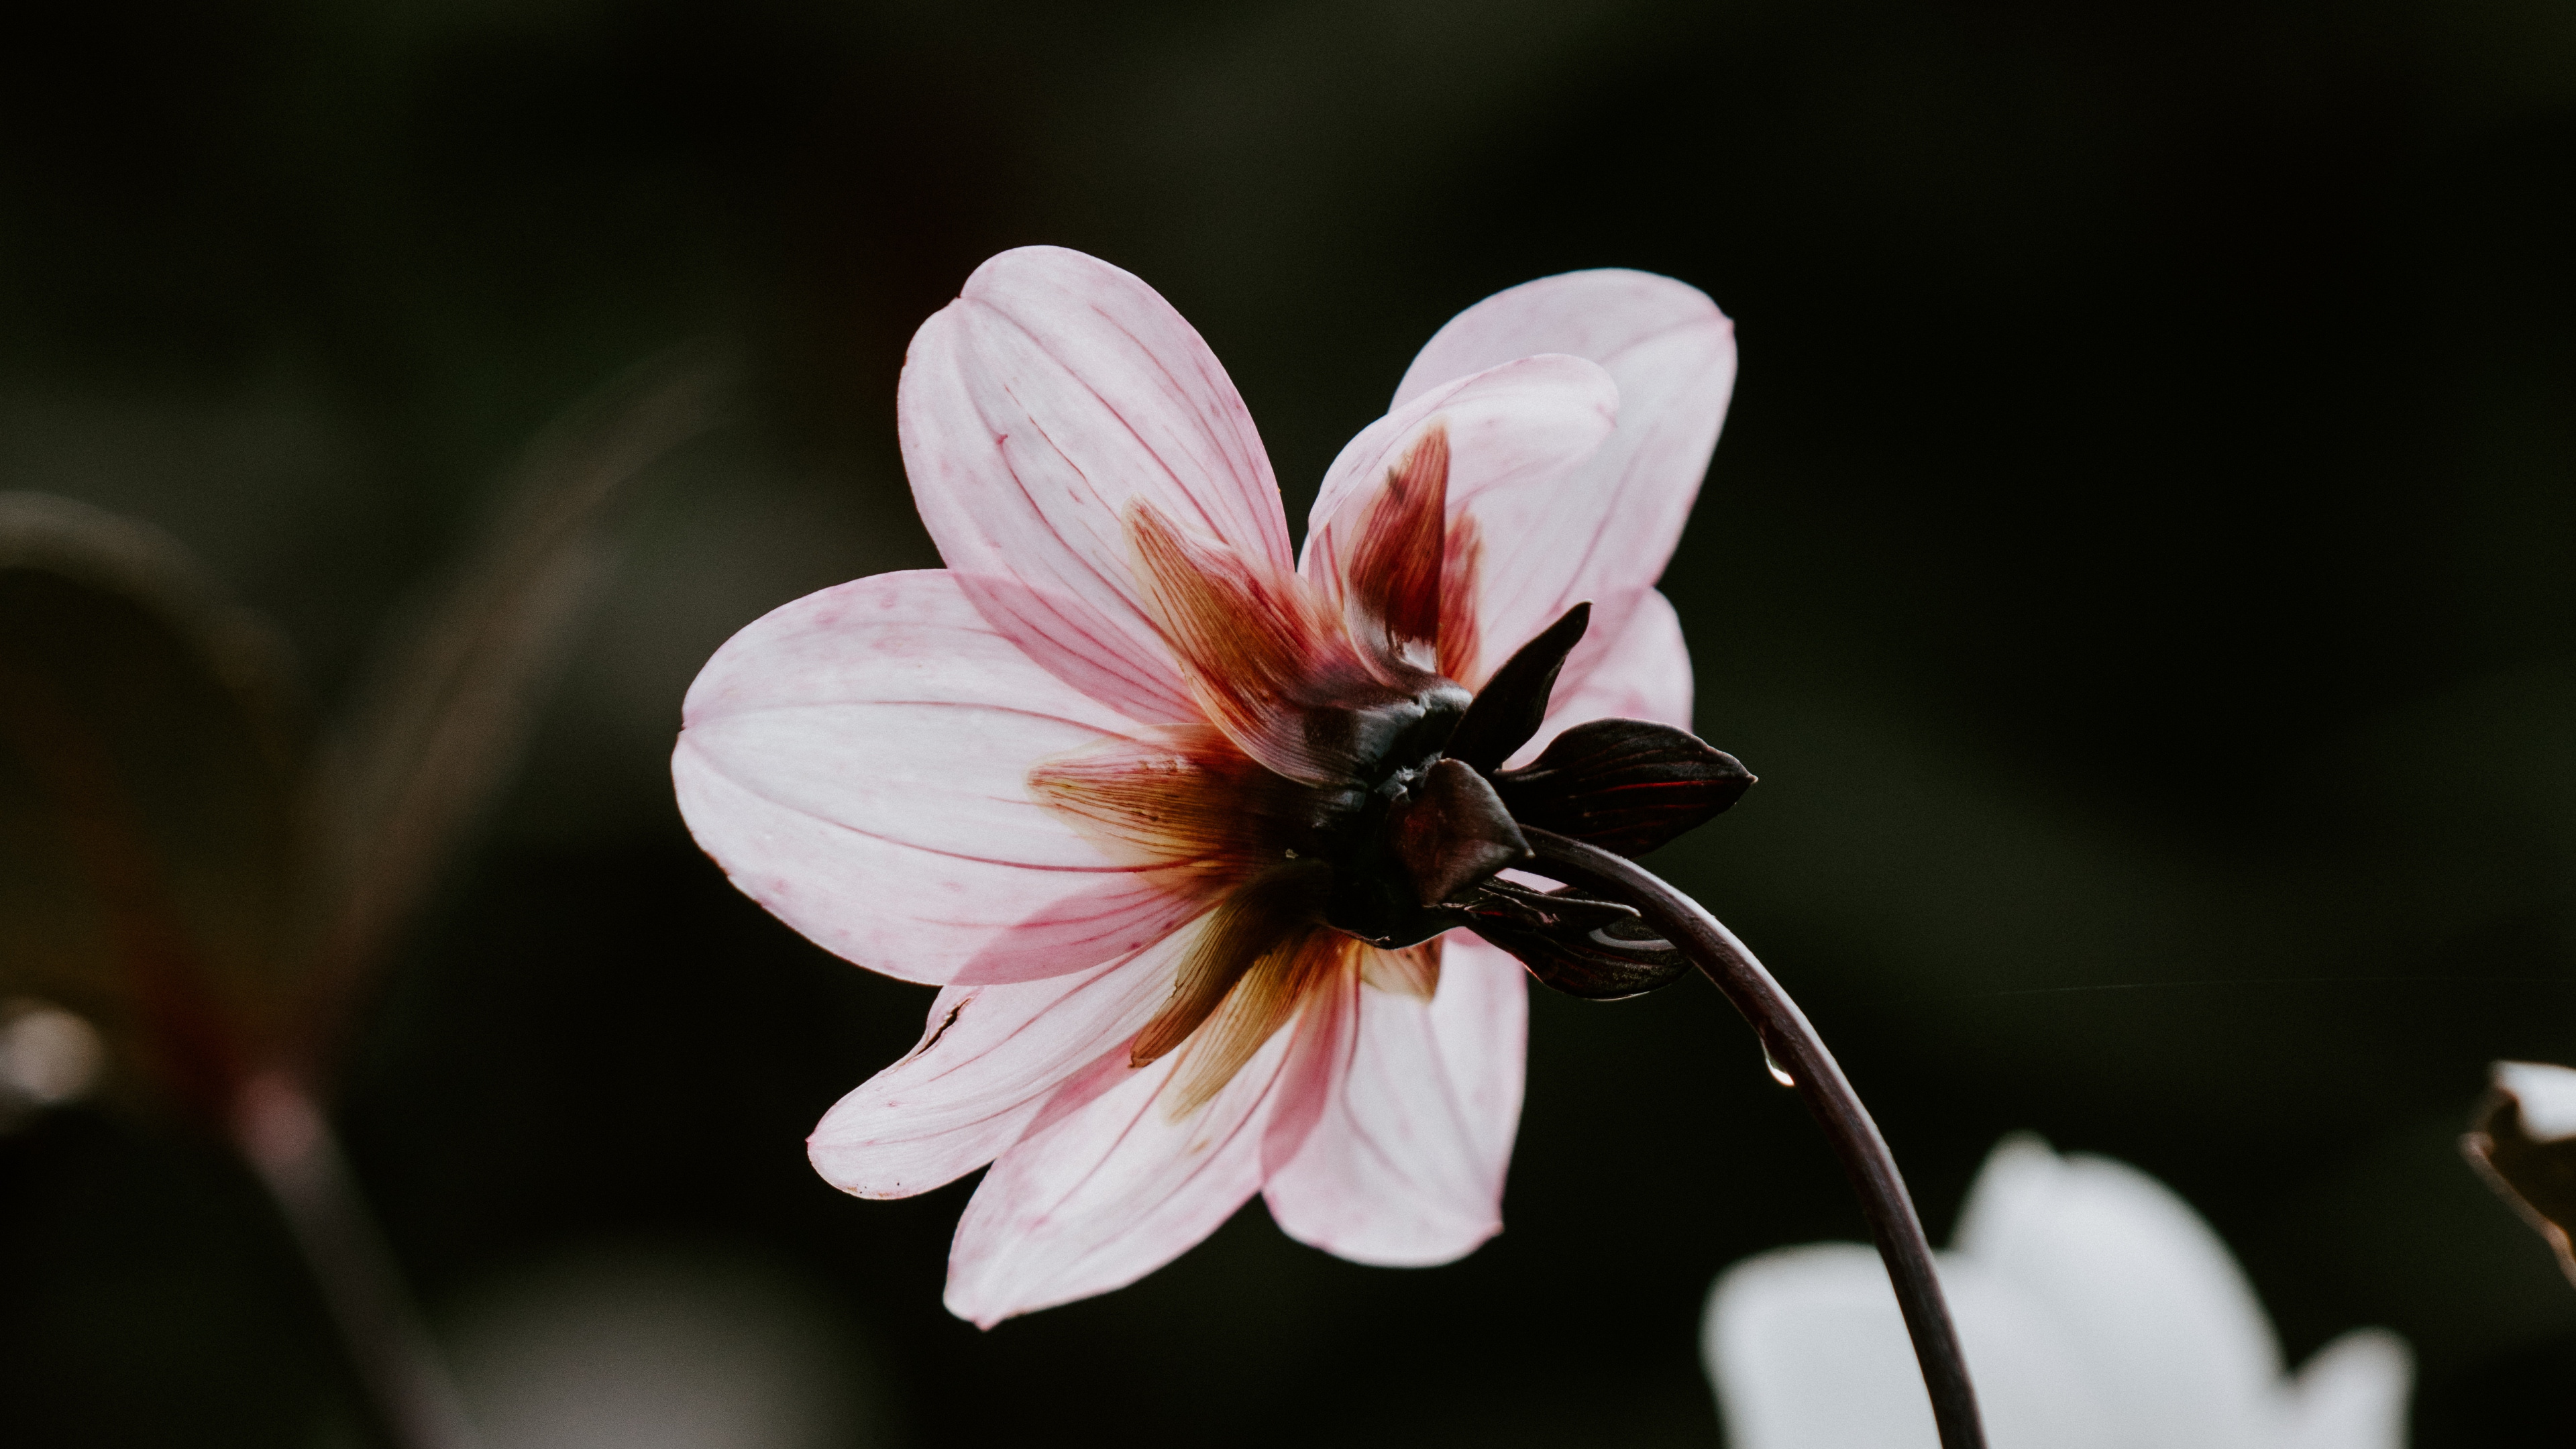 Pink and White Flower in Tilt Shift Lens. Wallpaper in 3840x2160 Resolution